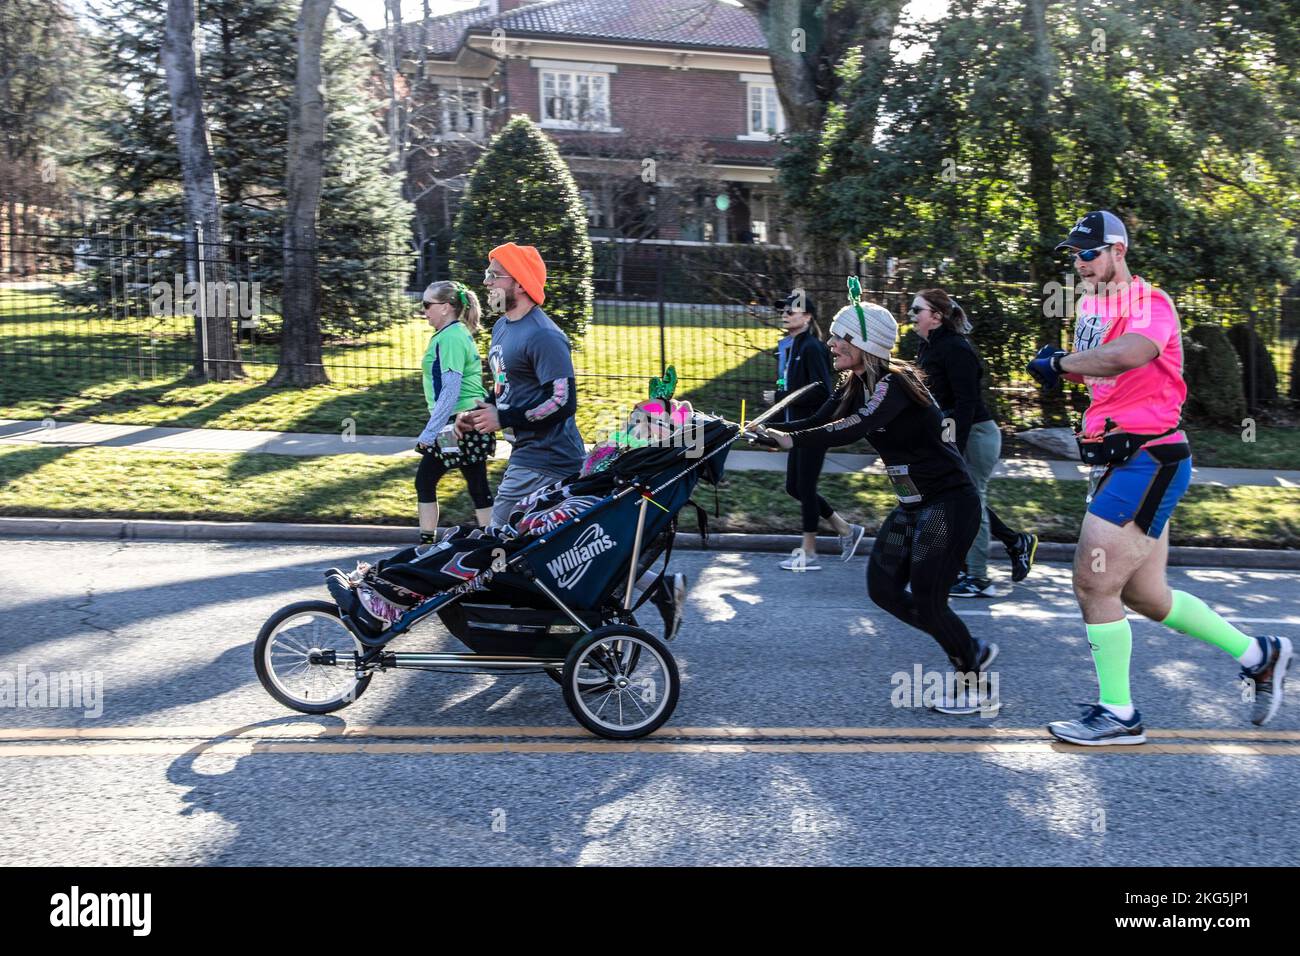 3-16-2019 Tulsa USA - Gruppe kostümierter Läufer bei der St. Patricks Day Parade, die eine behinderte Person drängen, damit sie das Erlebnis mit dem verschwommenen Haus genießen kann Stockfoto